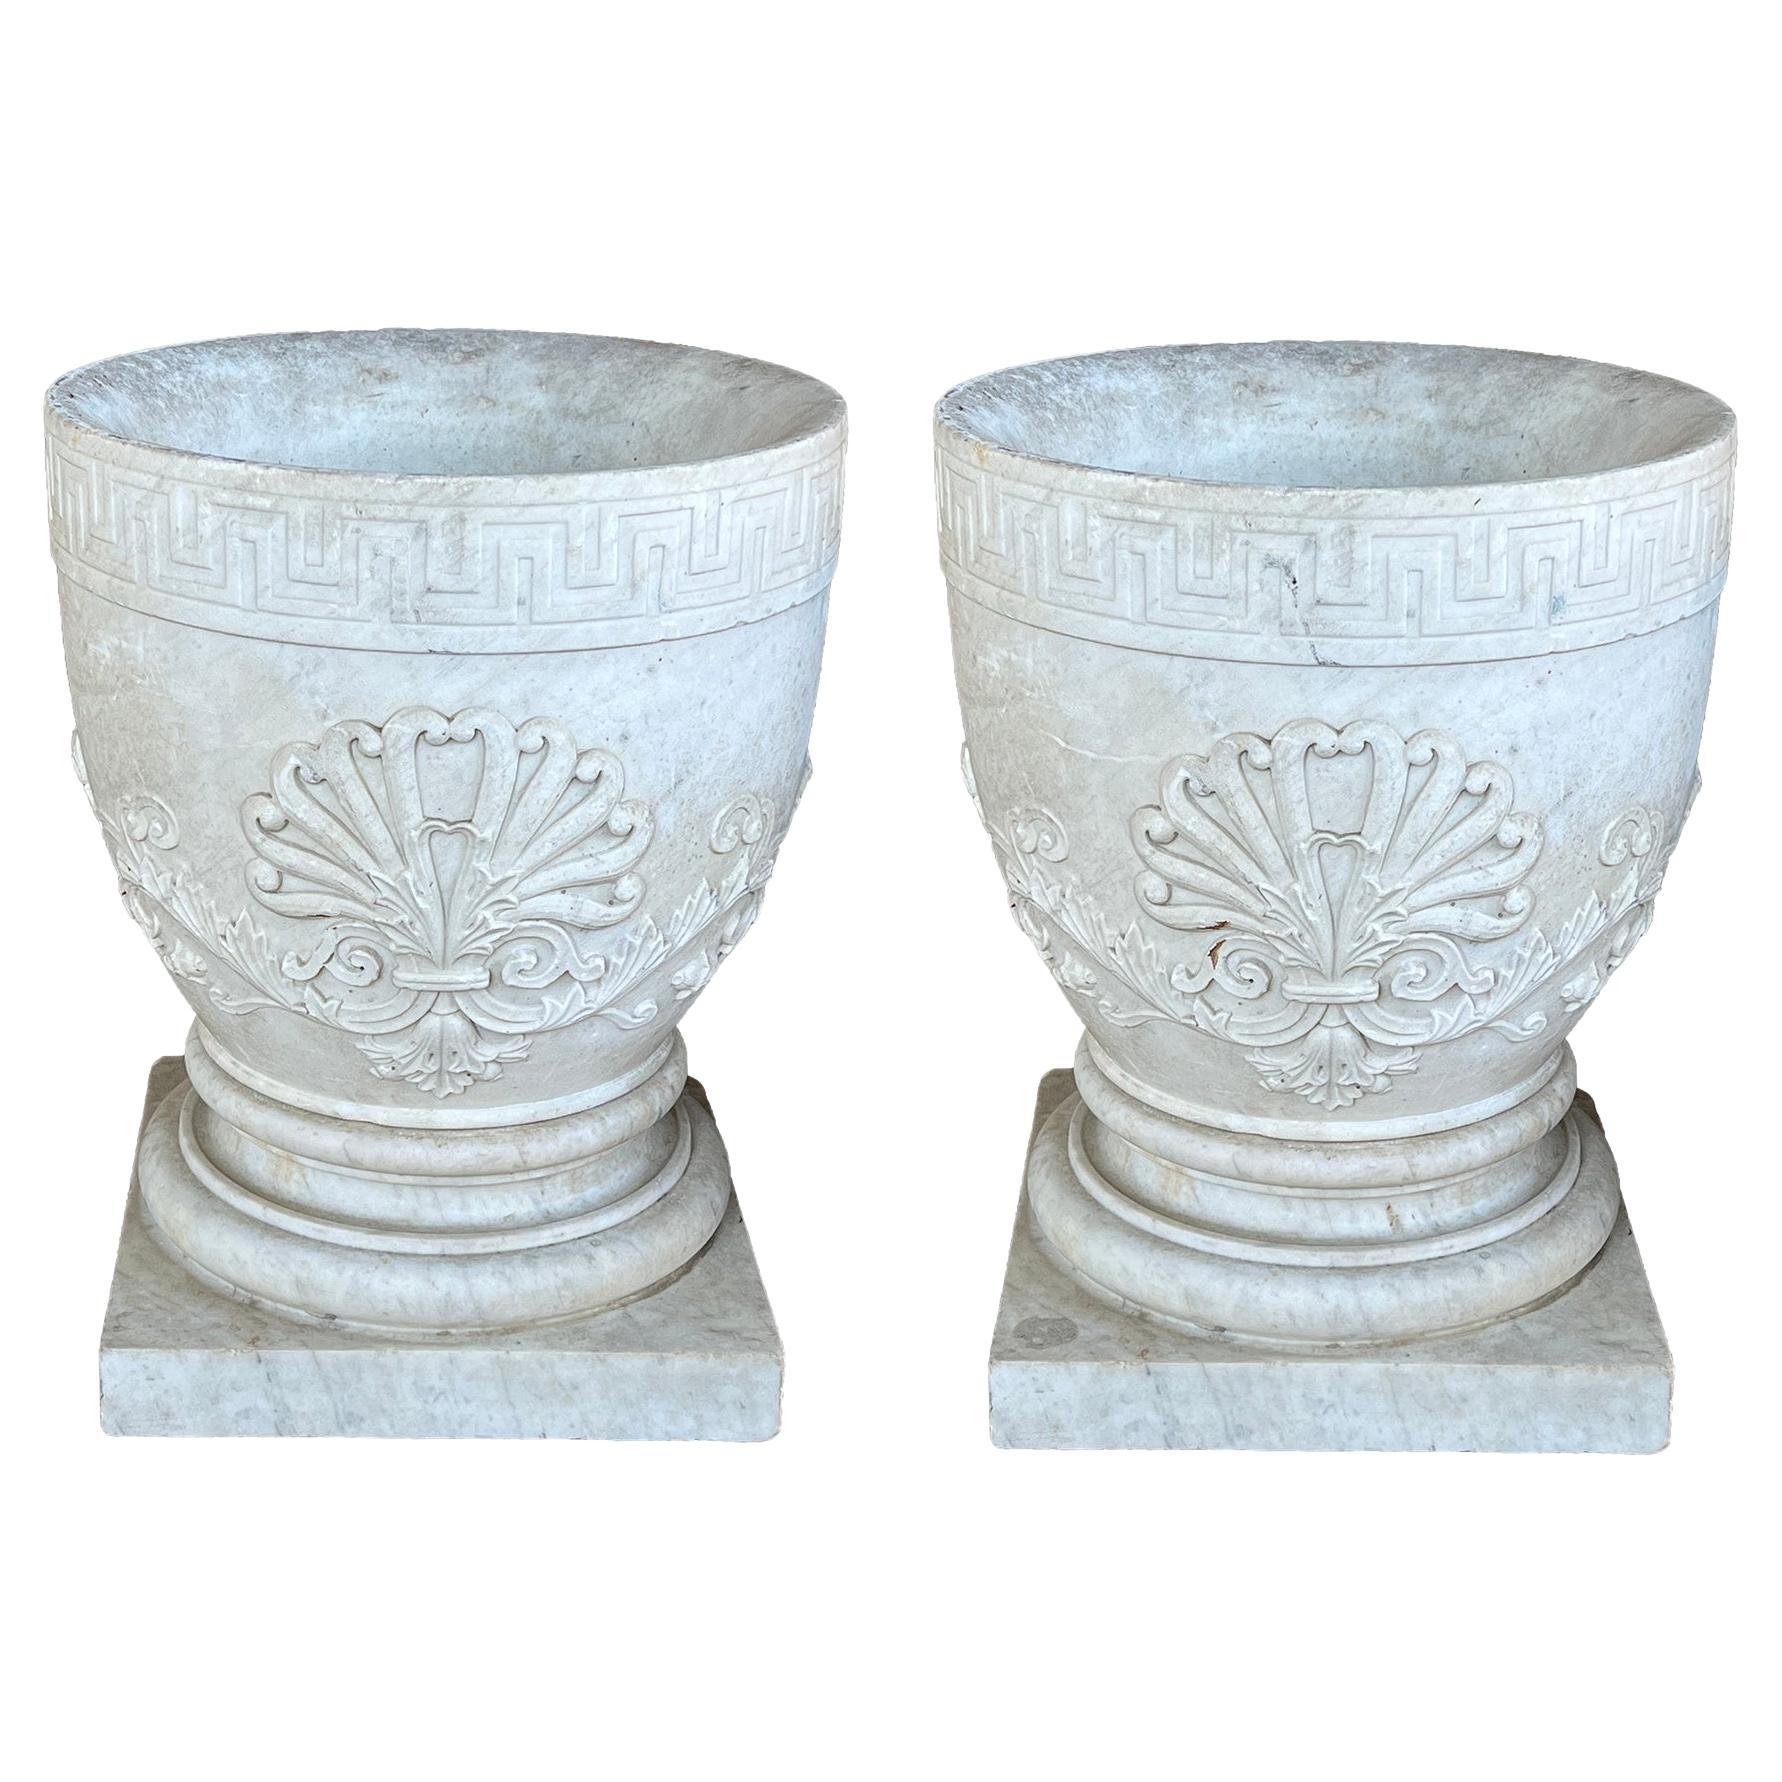 Paire d'urnes néoclassiques italiennes sculptées avec relief anthémion